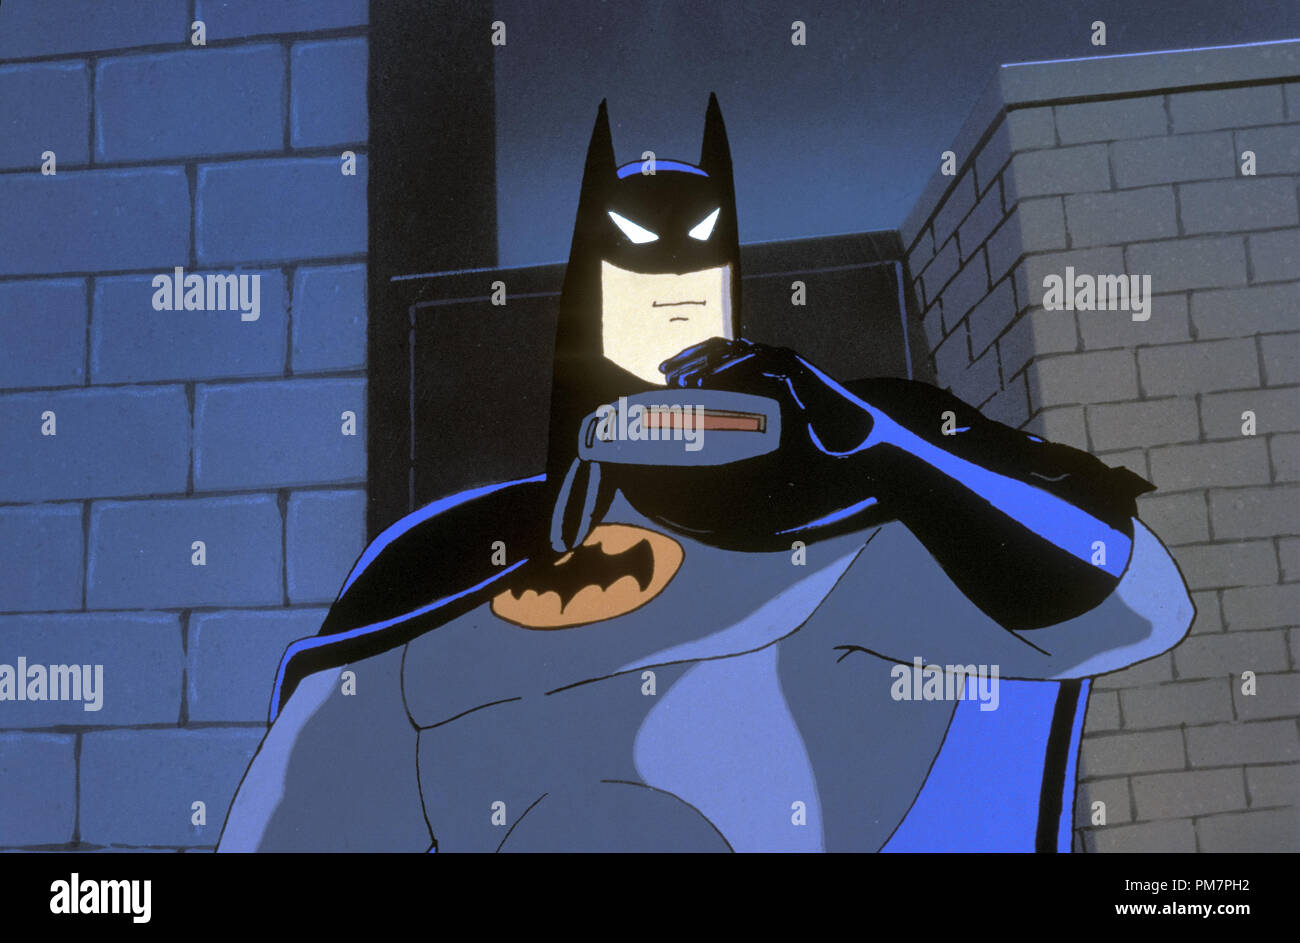 Batman fantasma pelicula batman fotografías e imágenes de alta resolución -  Alamy